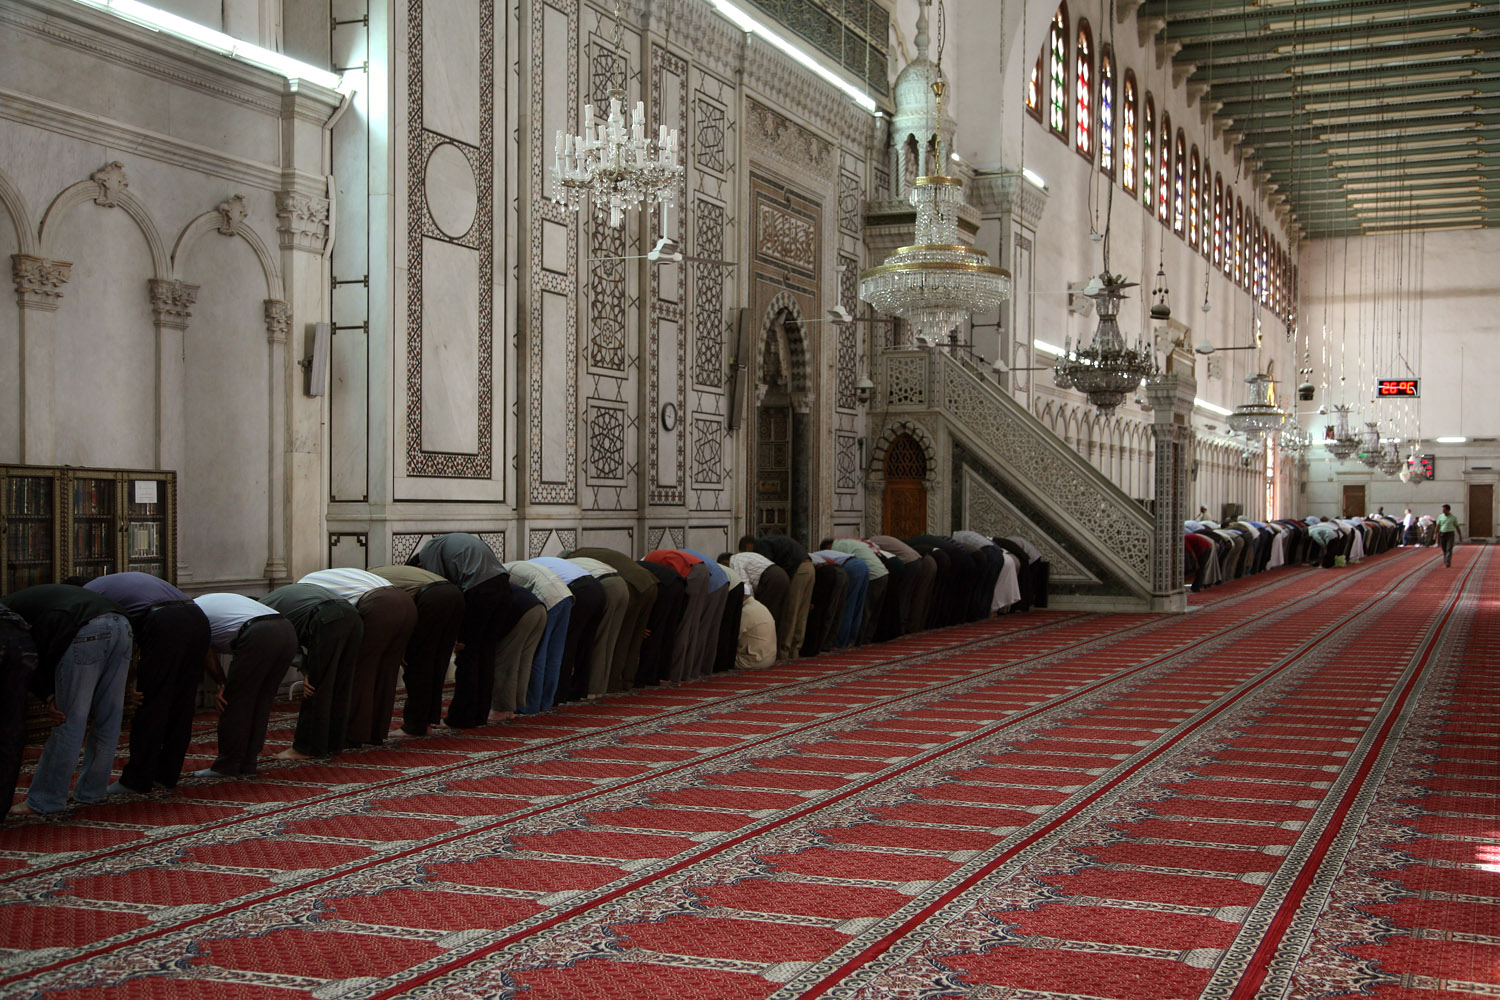 bill-hocker-men-at-prayer-masjid-umayyad-mosque-damascus-syria-2008